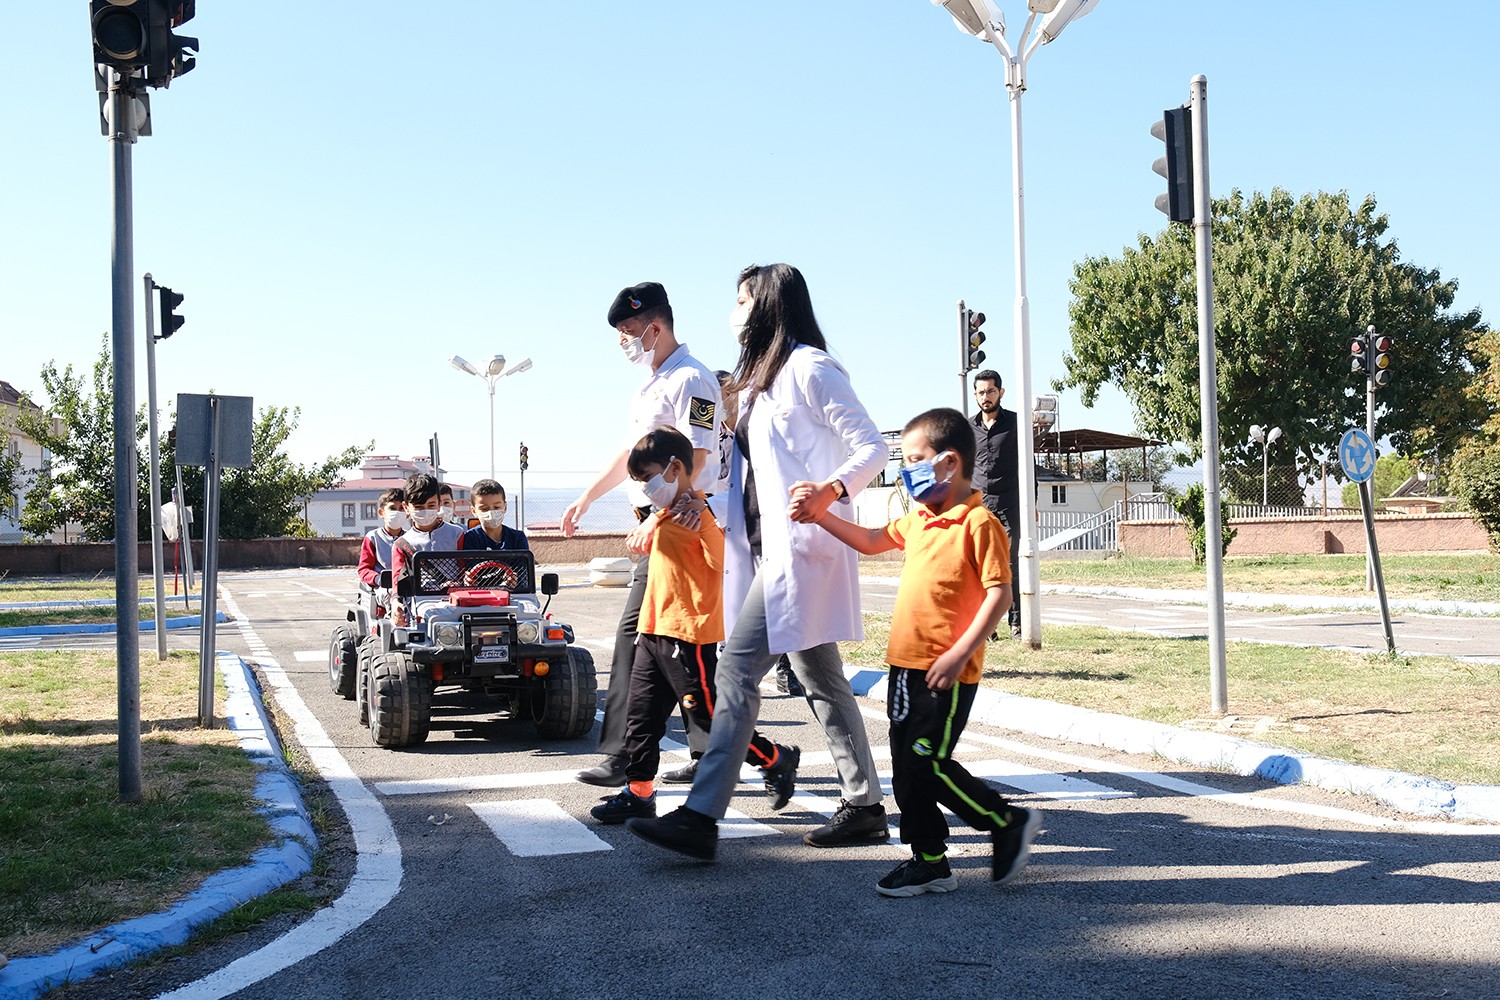 Kahramanmaraş’ta çocuklara trafik eğitimi #kahramanmaras